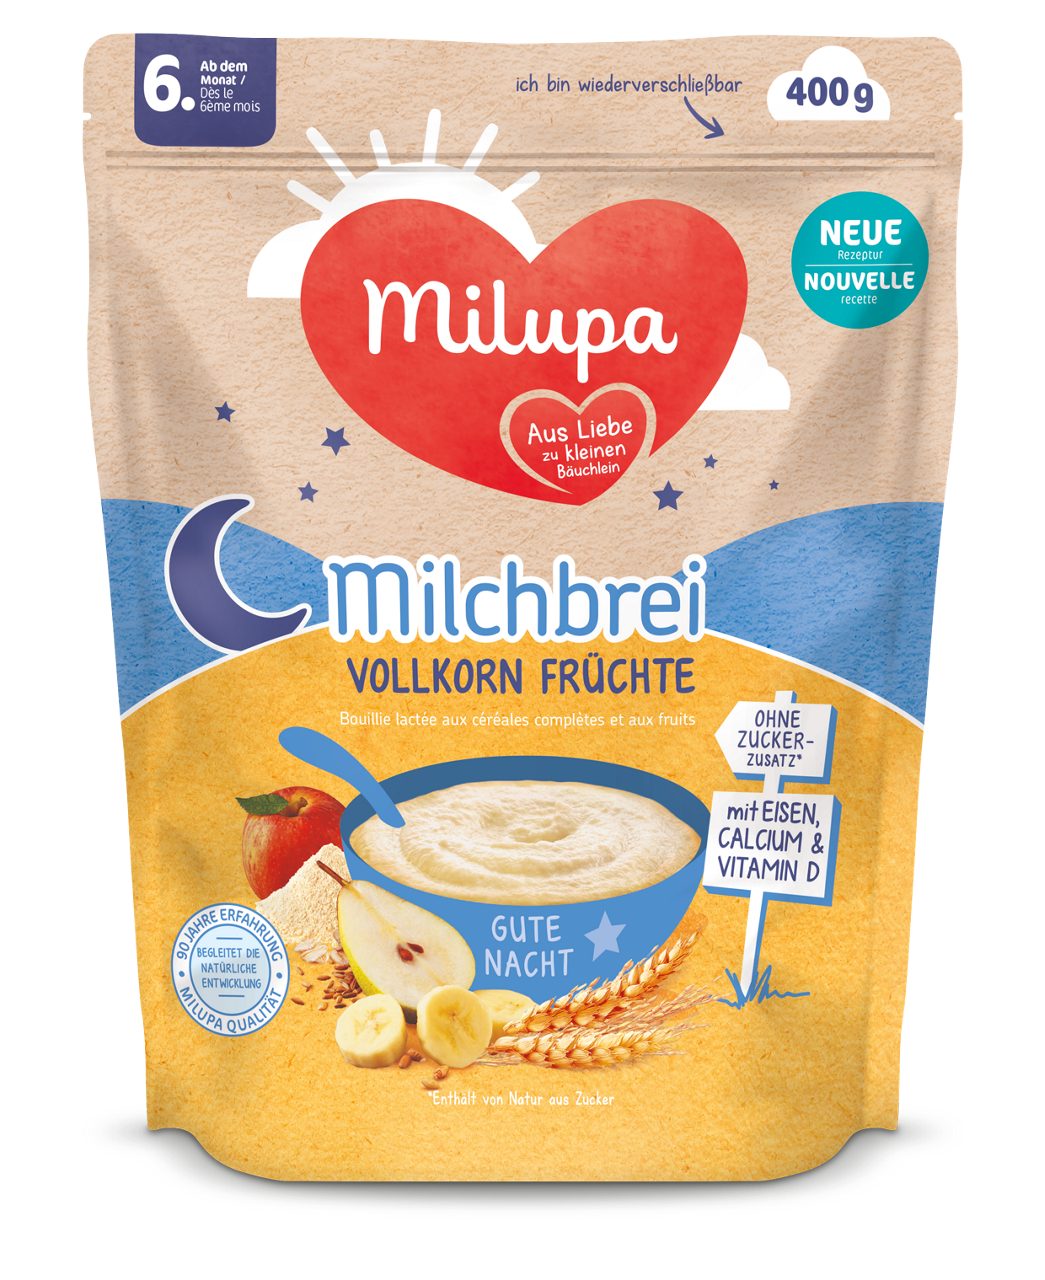 Milupa AT product milchbreivollkornfruechtefop20201240x1519